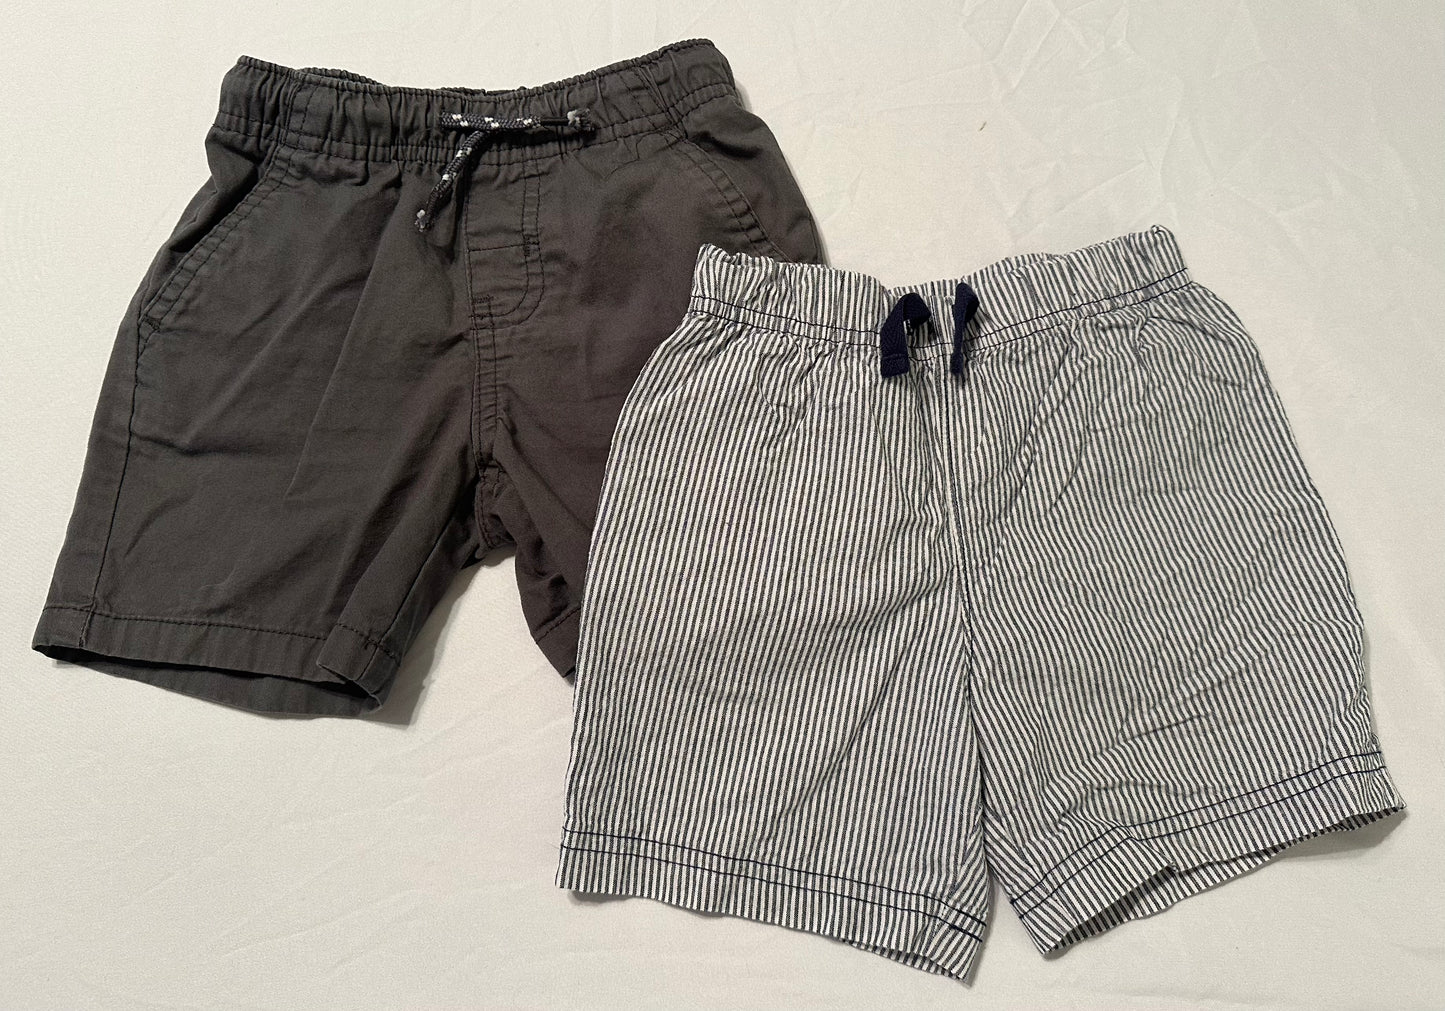 Boys shorts bundle, 2t Cat & Jack (grey) / 24 months Carter’s